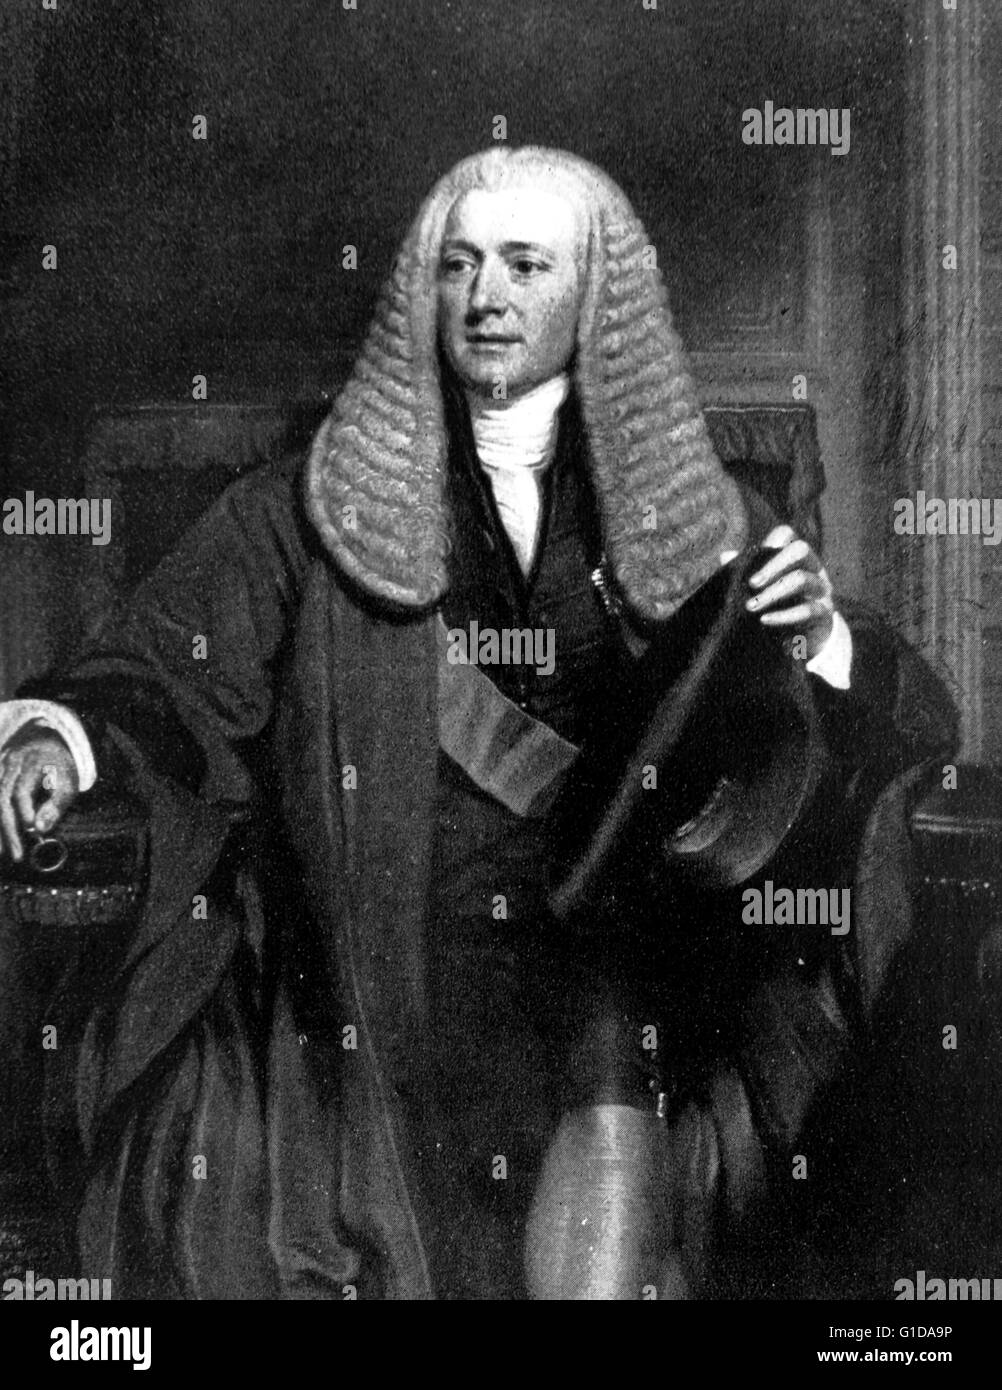 Charles Manners-Sutton (1755-1828) était un évêque dans l'église d'Angleterre, qui a été archevêque de Cantorbéry de 1805 jusqu'à sa mort en 1828. Banque D'Images